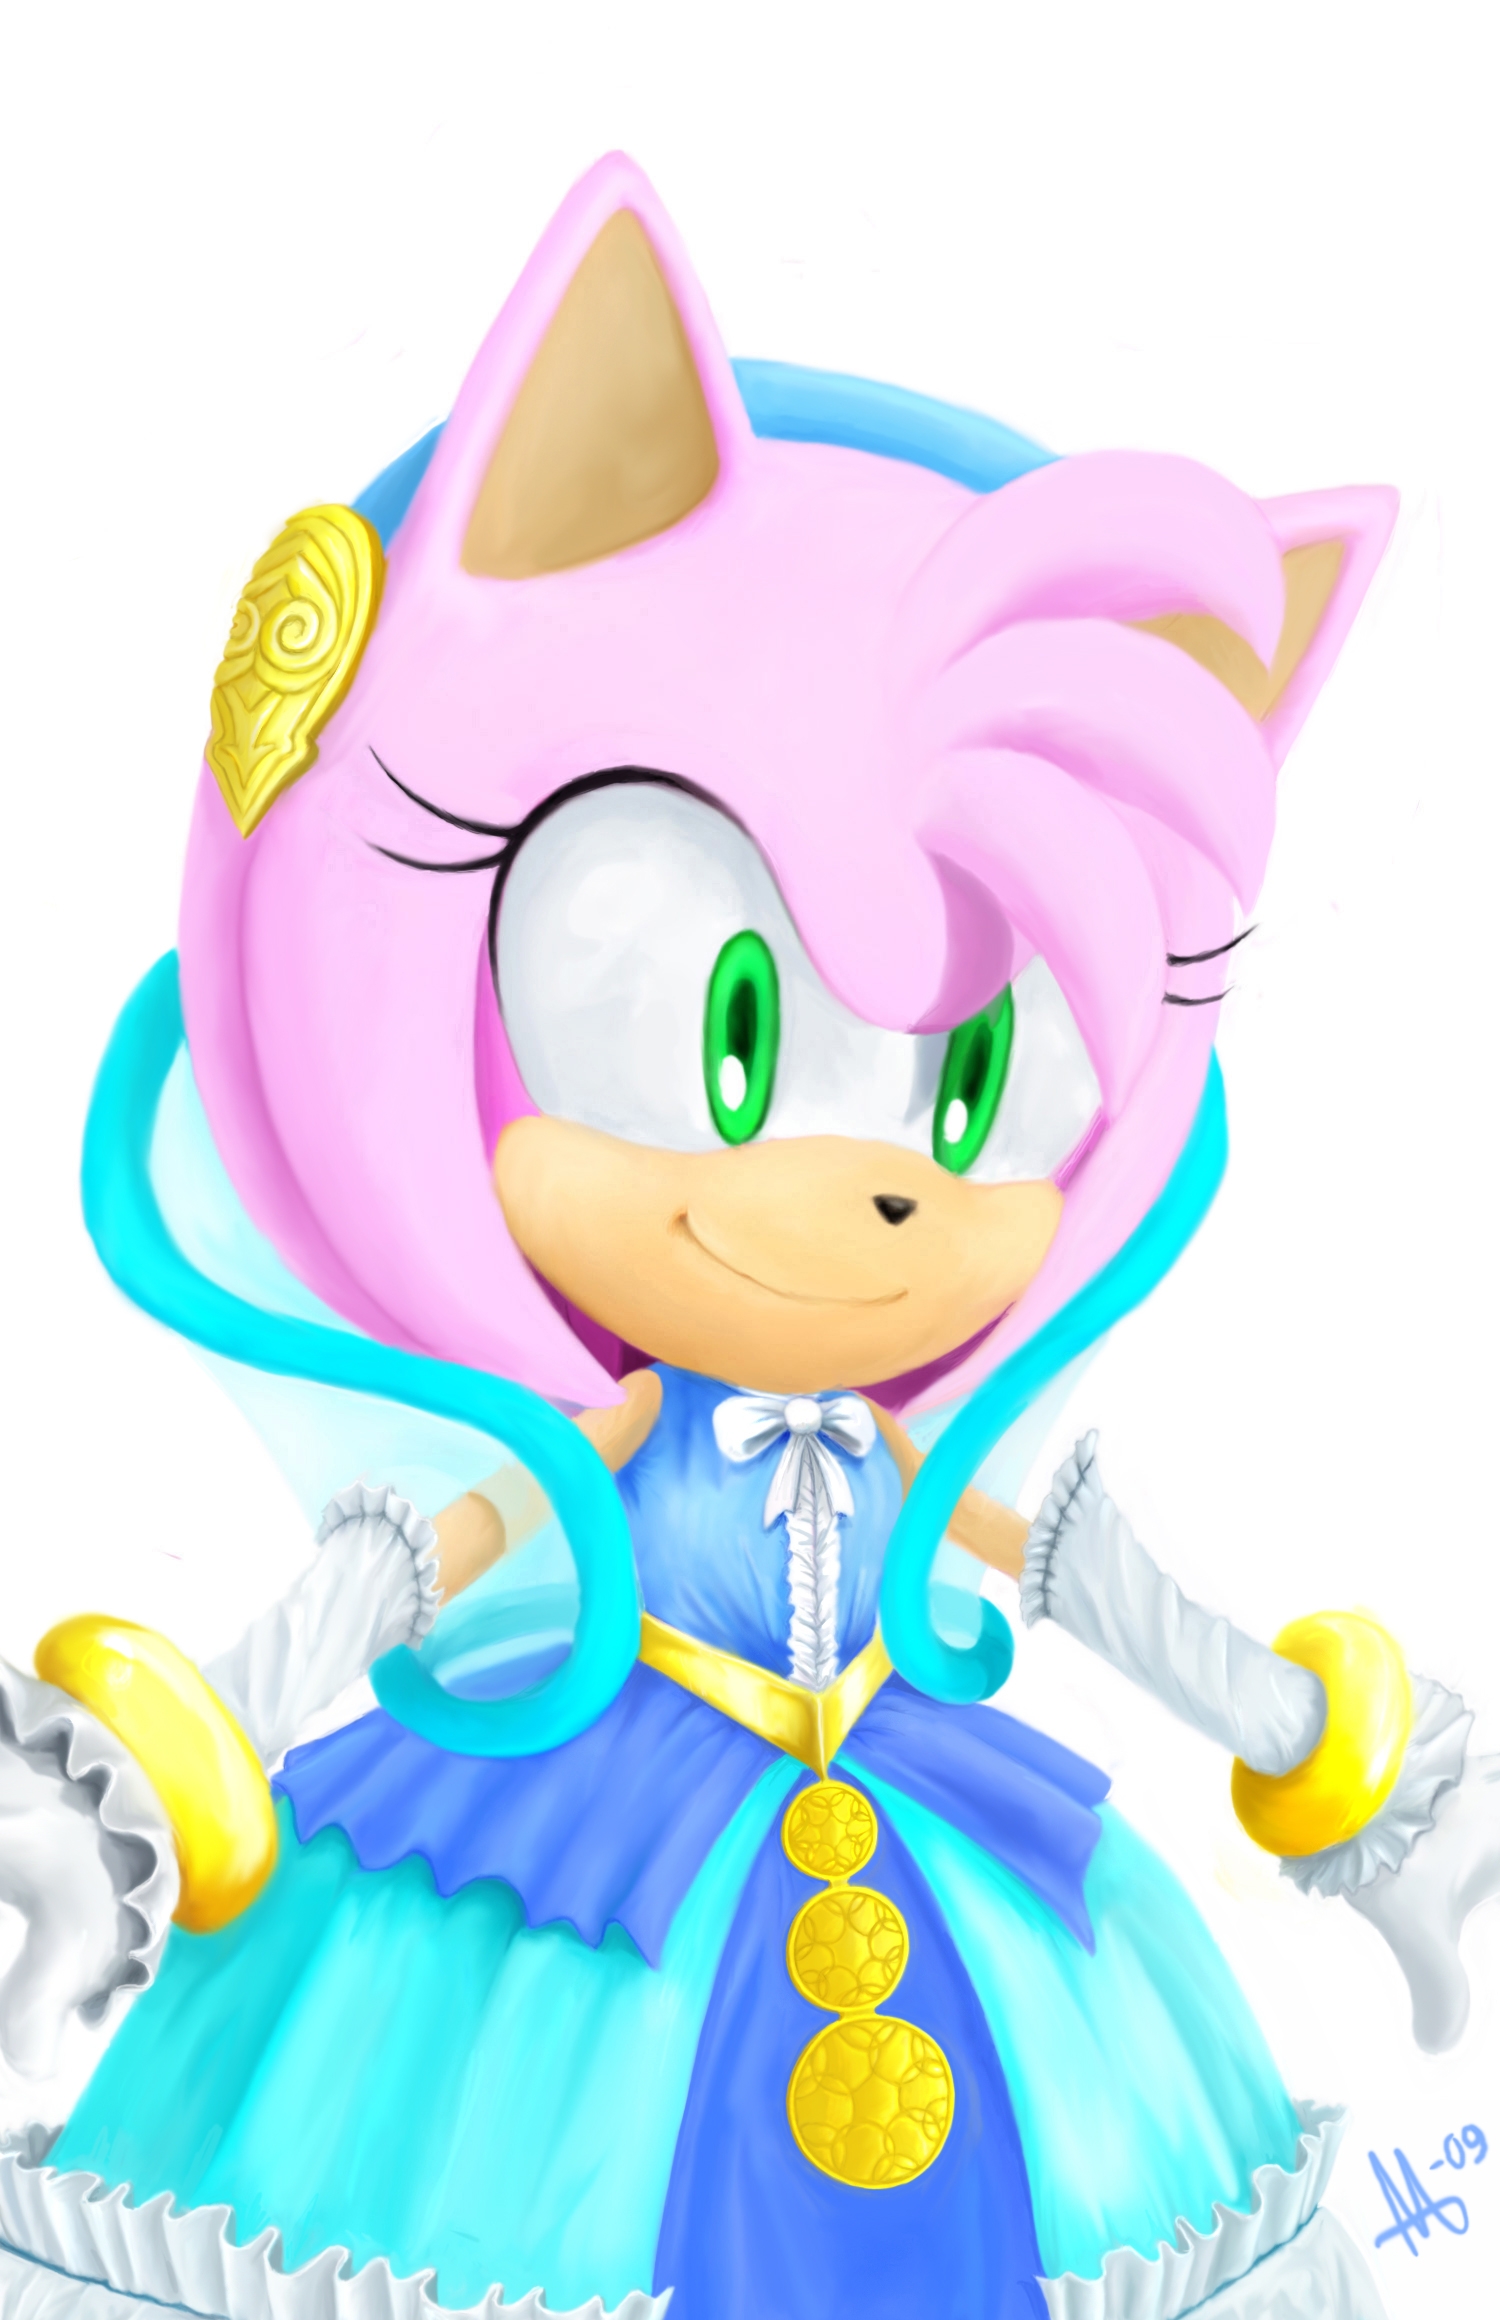 Lady of the lake - Sonic the Hedgehog Fan Art (37162593) - Fanpop Egoraptor...